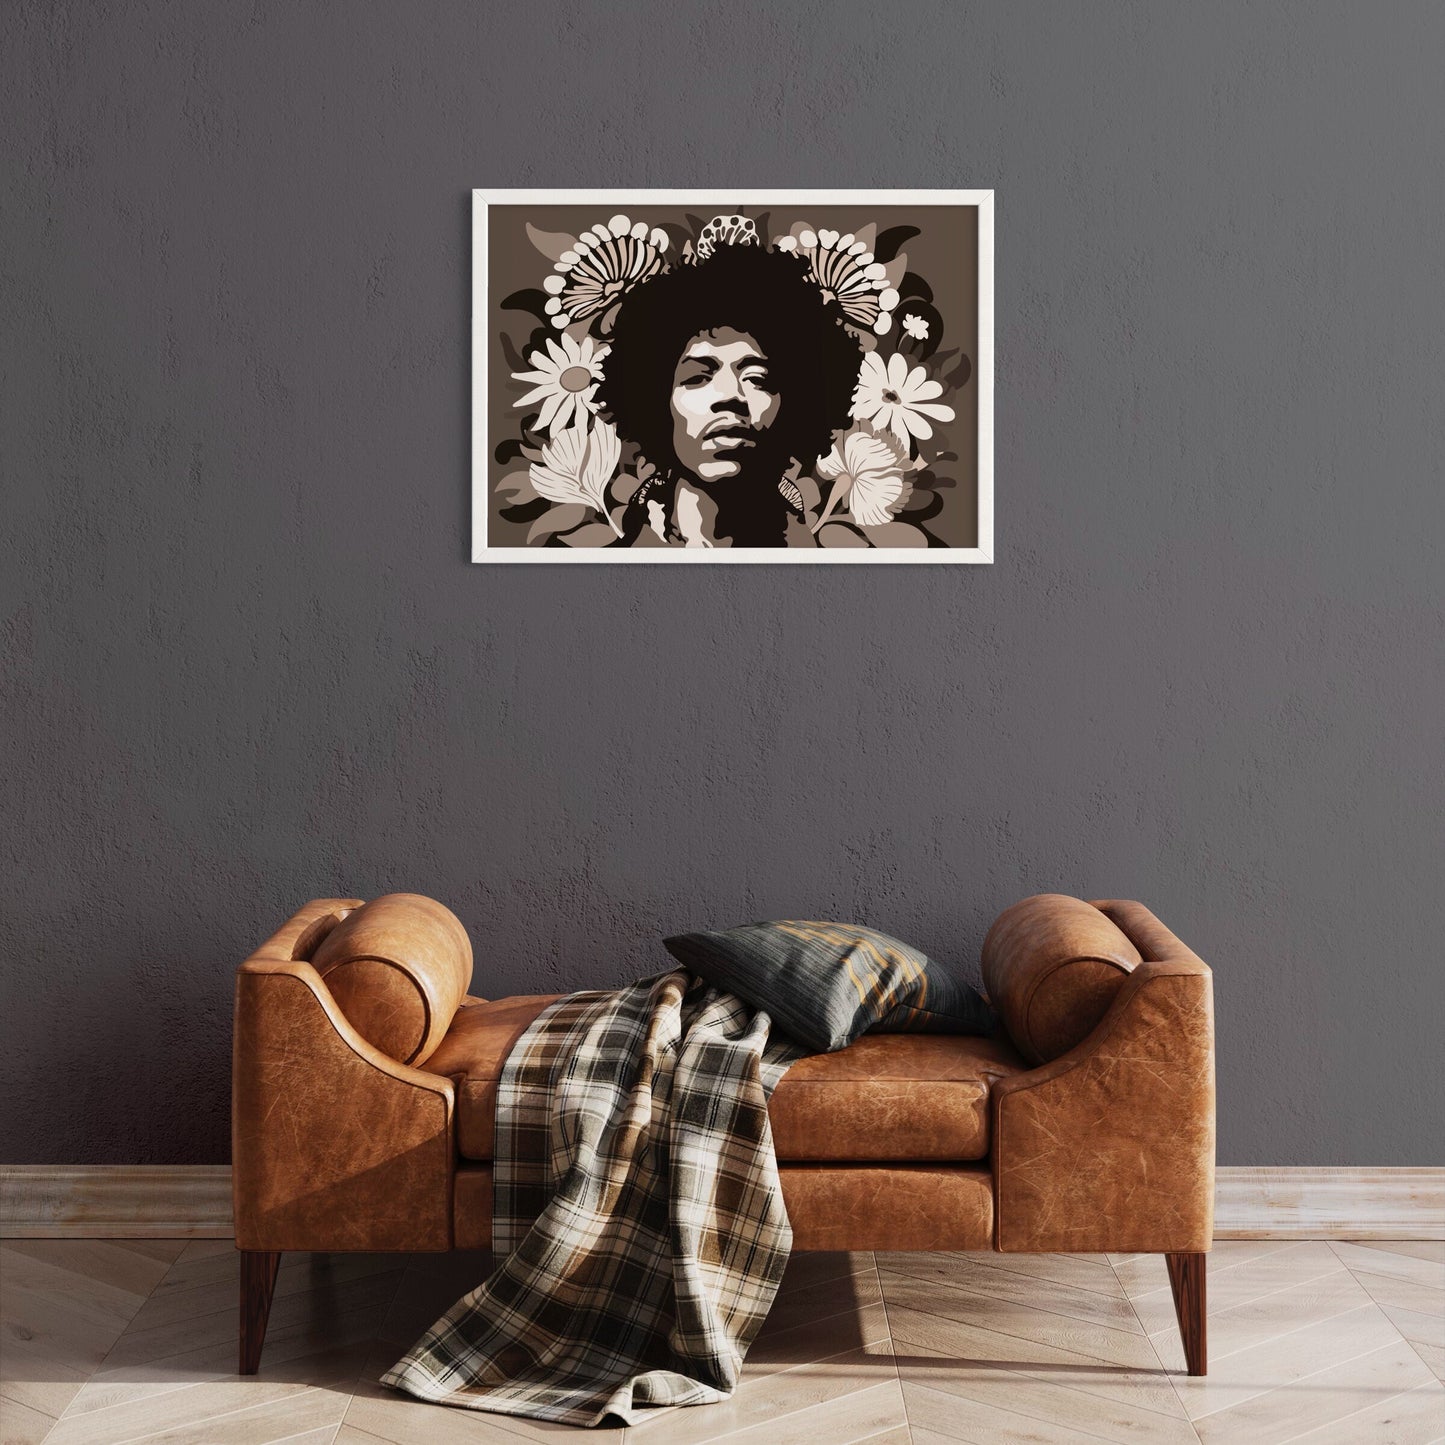 Jimi Hendrix Print, Wall Art Decor, Brown